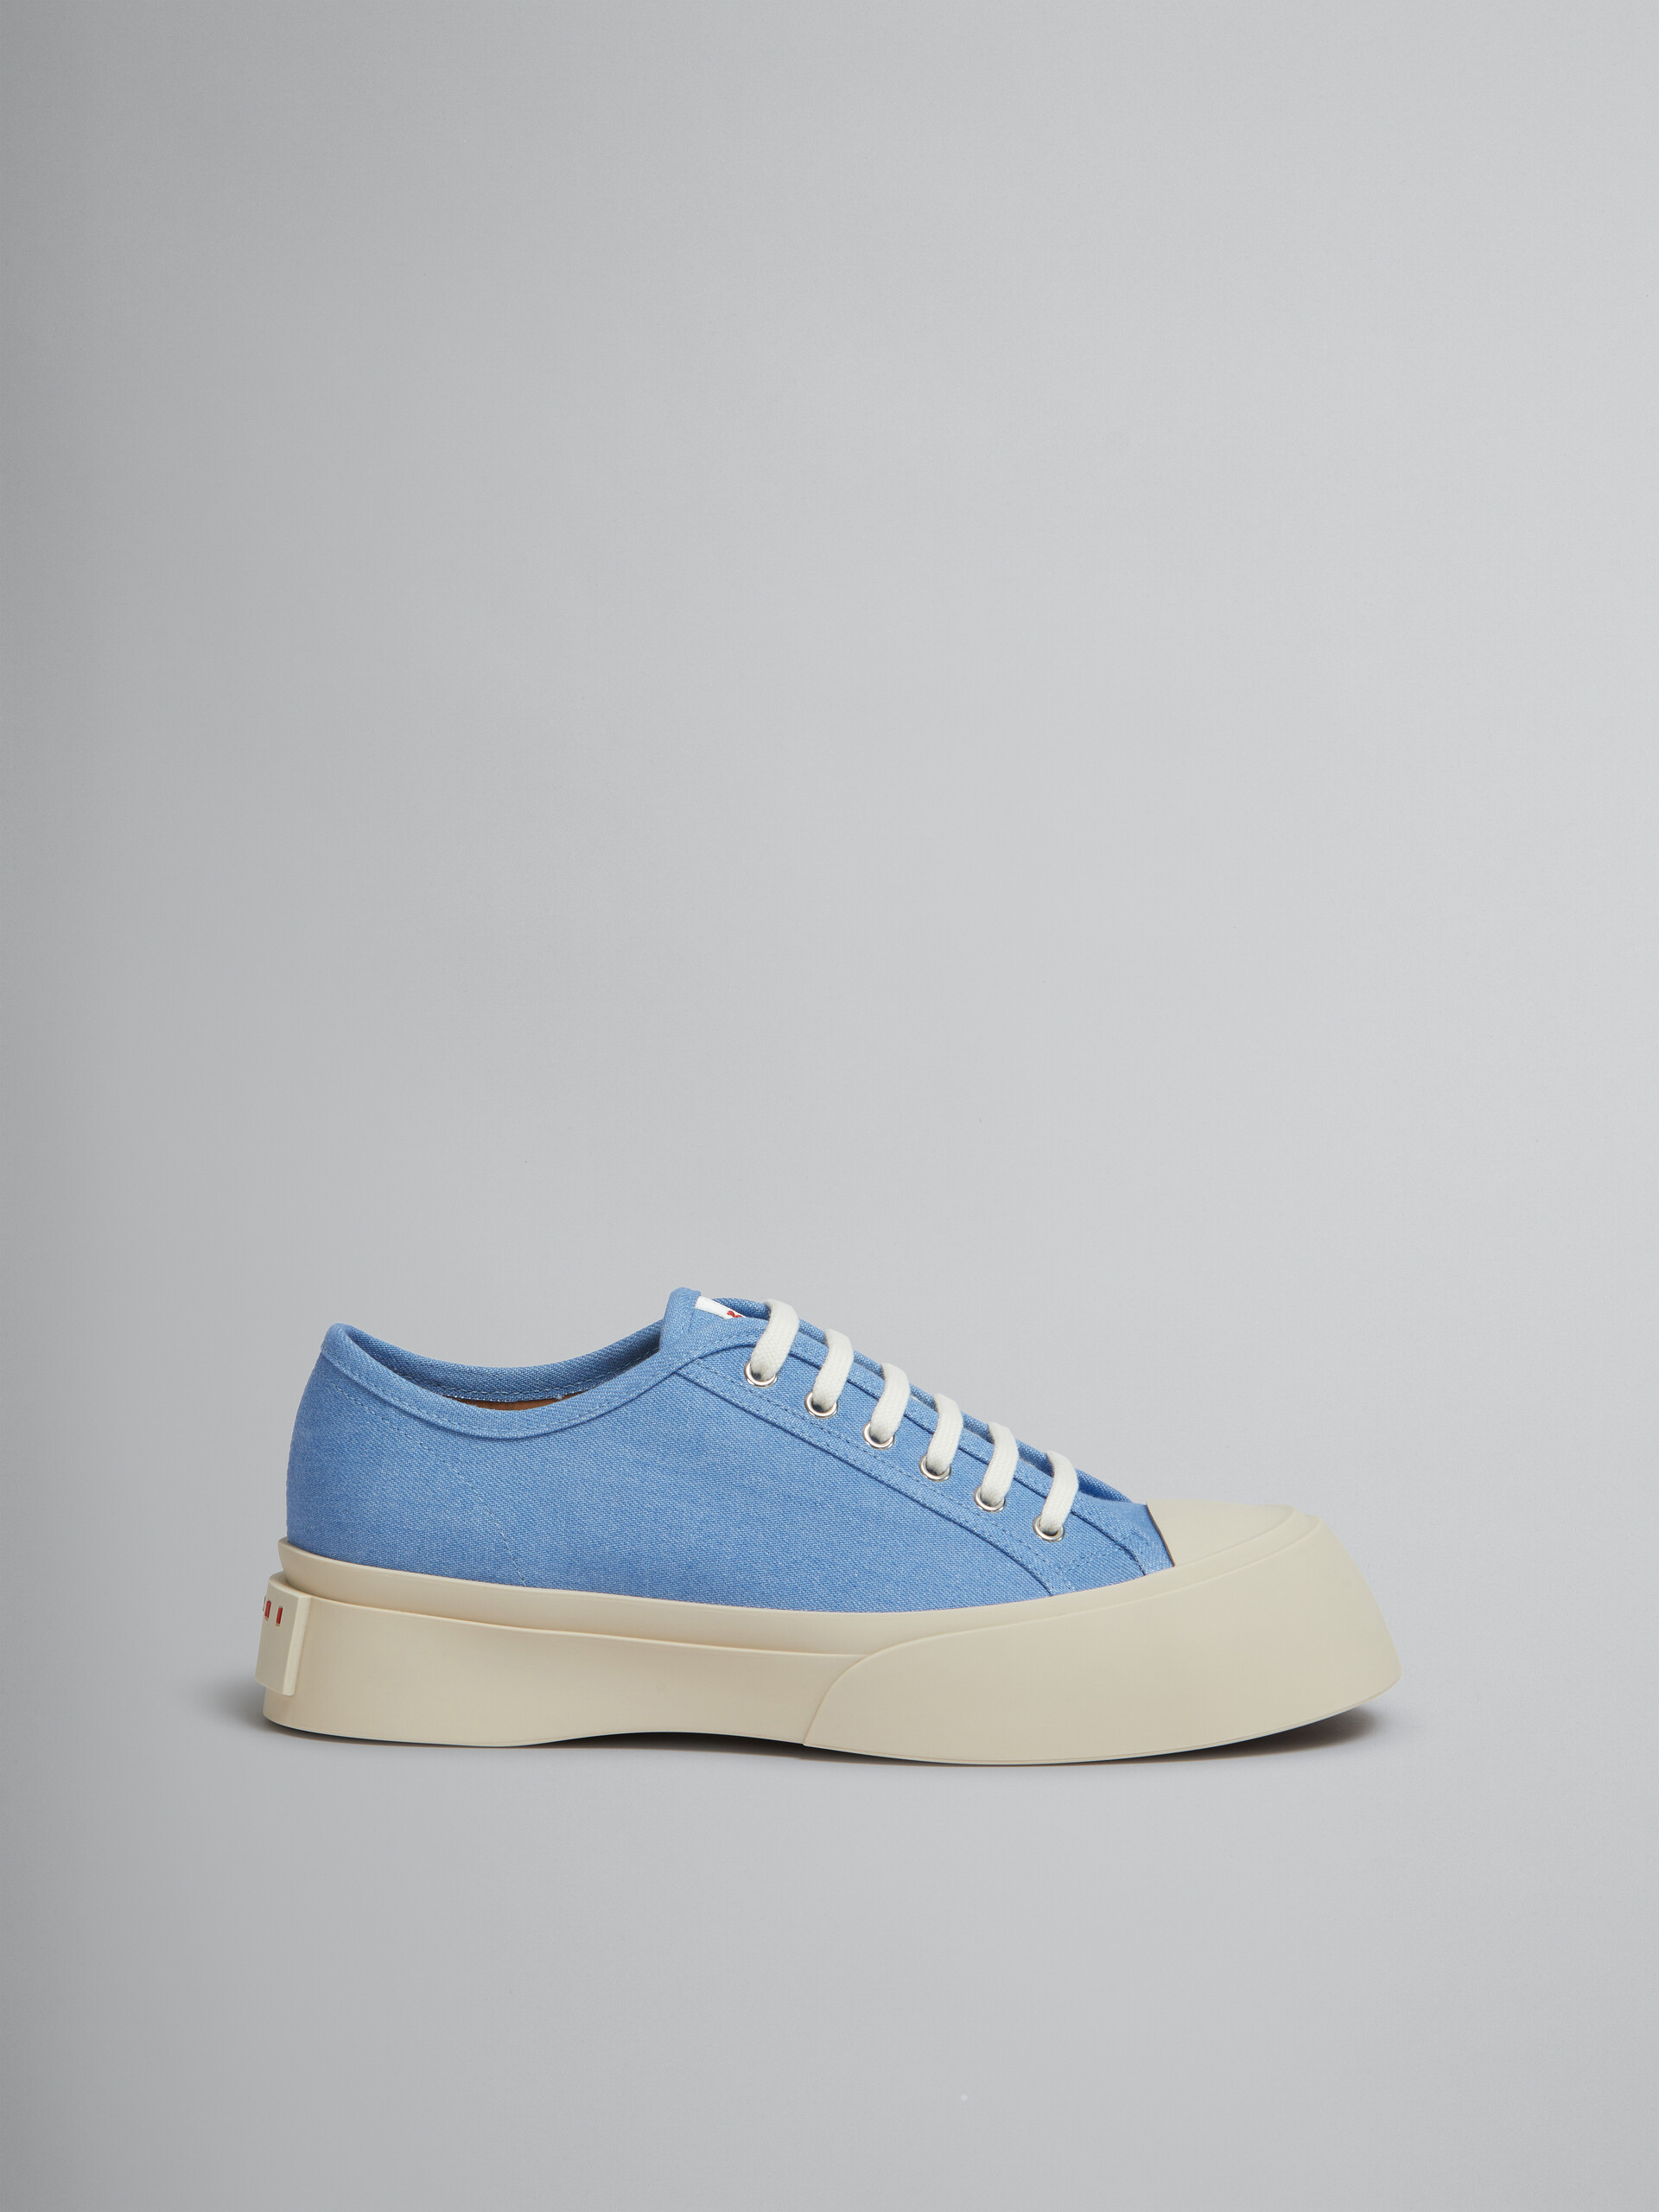 Zapatilla con cordones Pablo de denim azul claro - Sneakers - Image 1